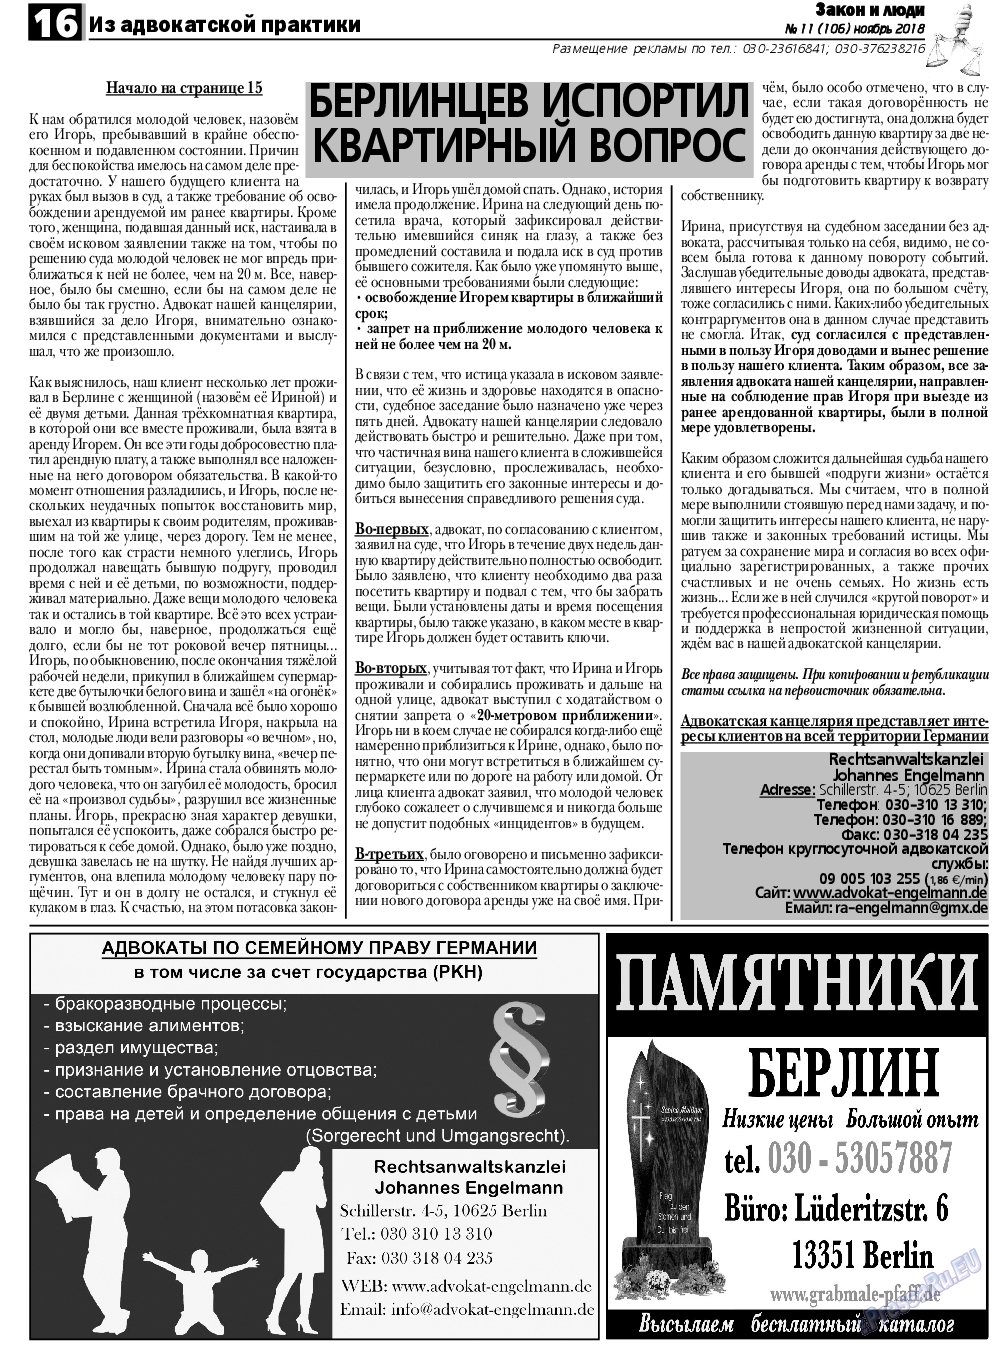 Закон и люди, газета. 2018 №11 стр.16